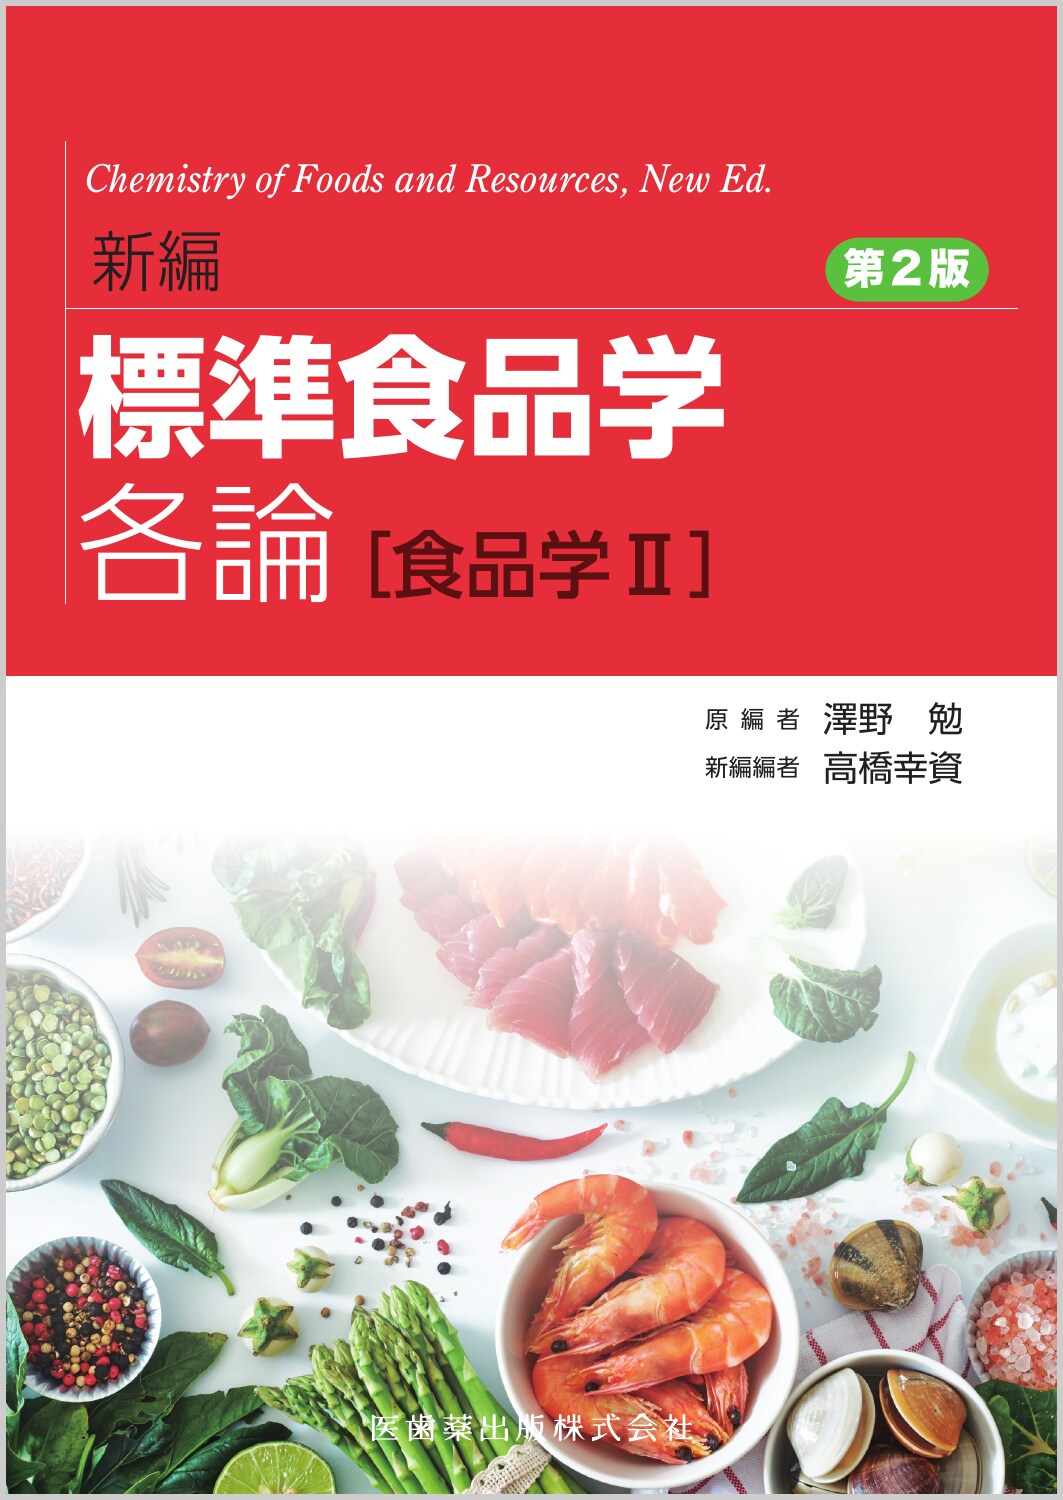 新編 標準食品学 各論［食品学Ⅱ］ 第2版の商品画像